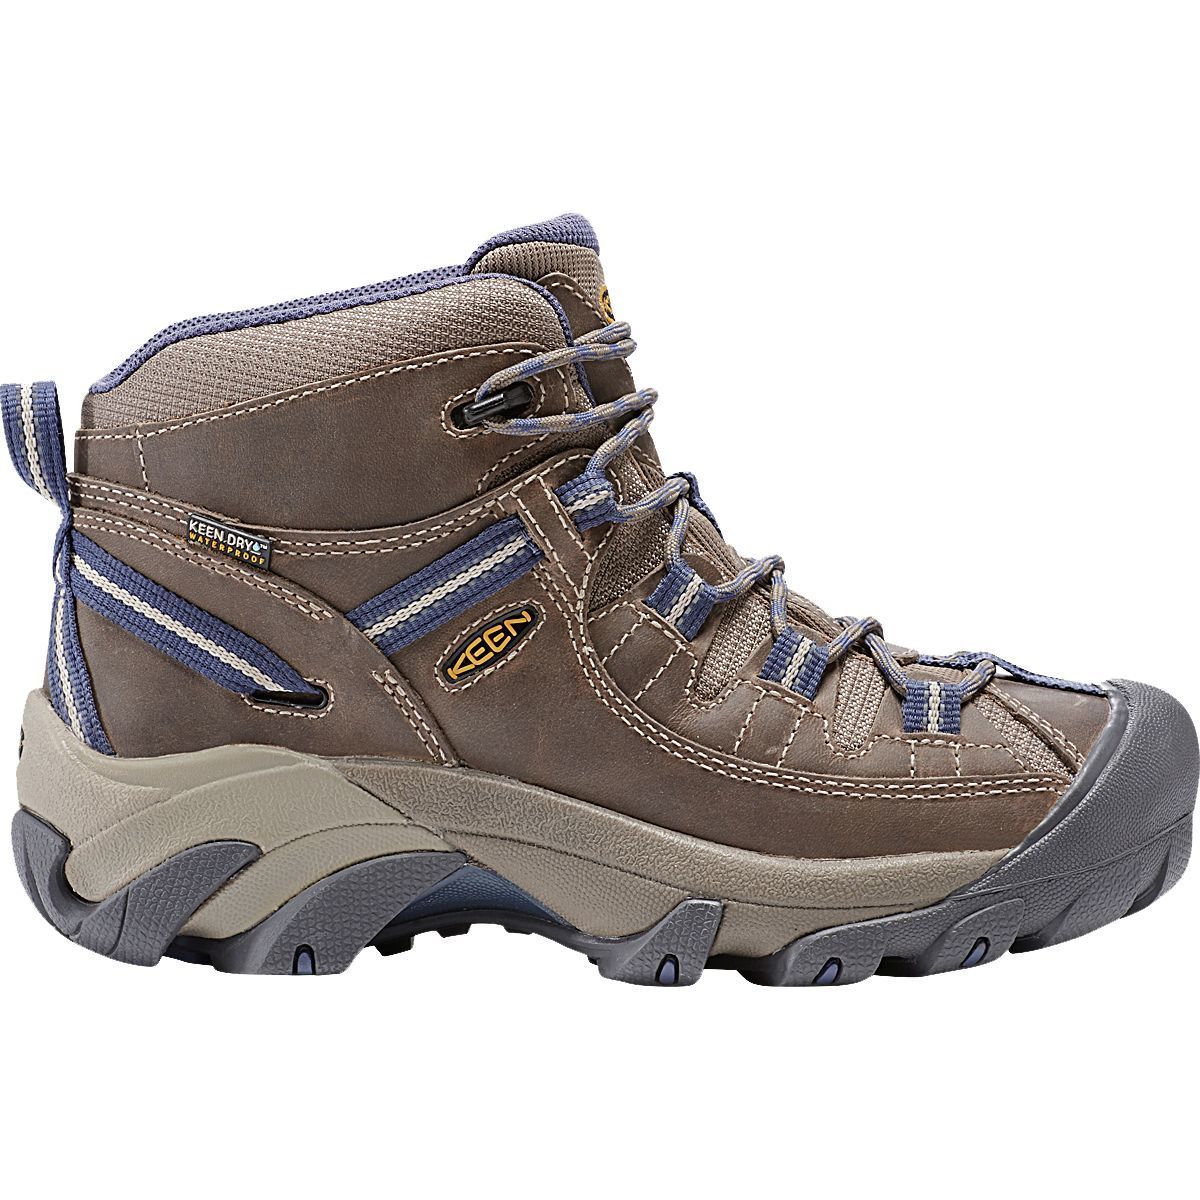 KEEN Targhee II Mid Hiking Boot - Women's - Footwear | Backcountry